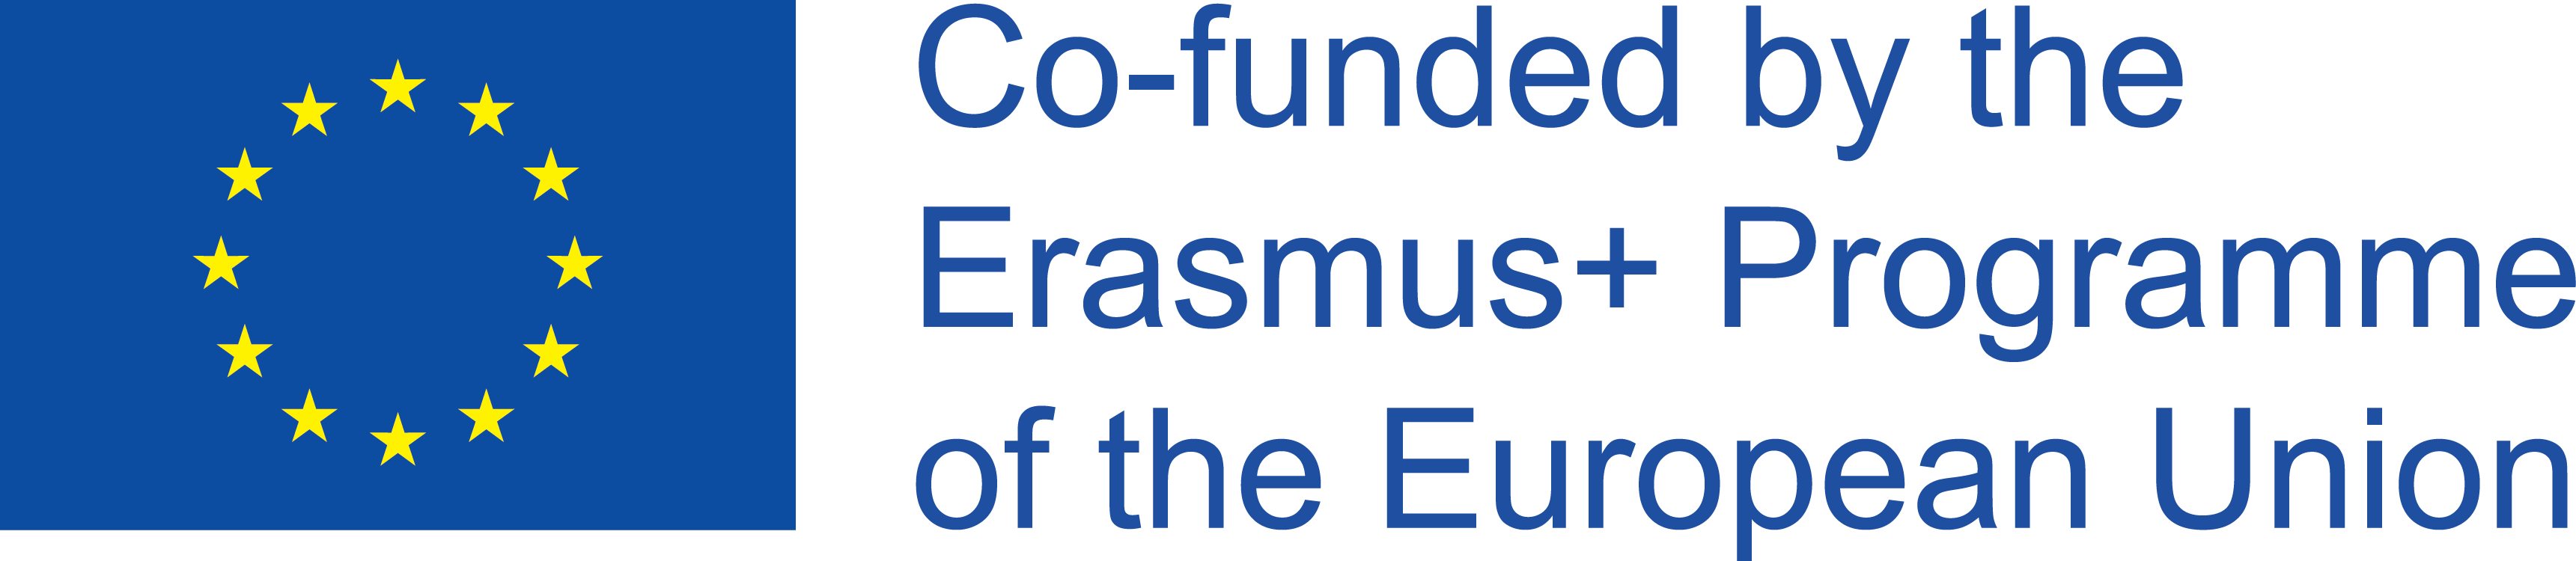 Со-финансировано в рамках программы Erasmus+ Европейского Союза